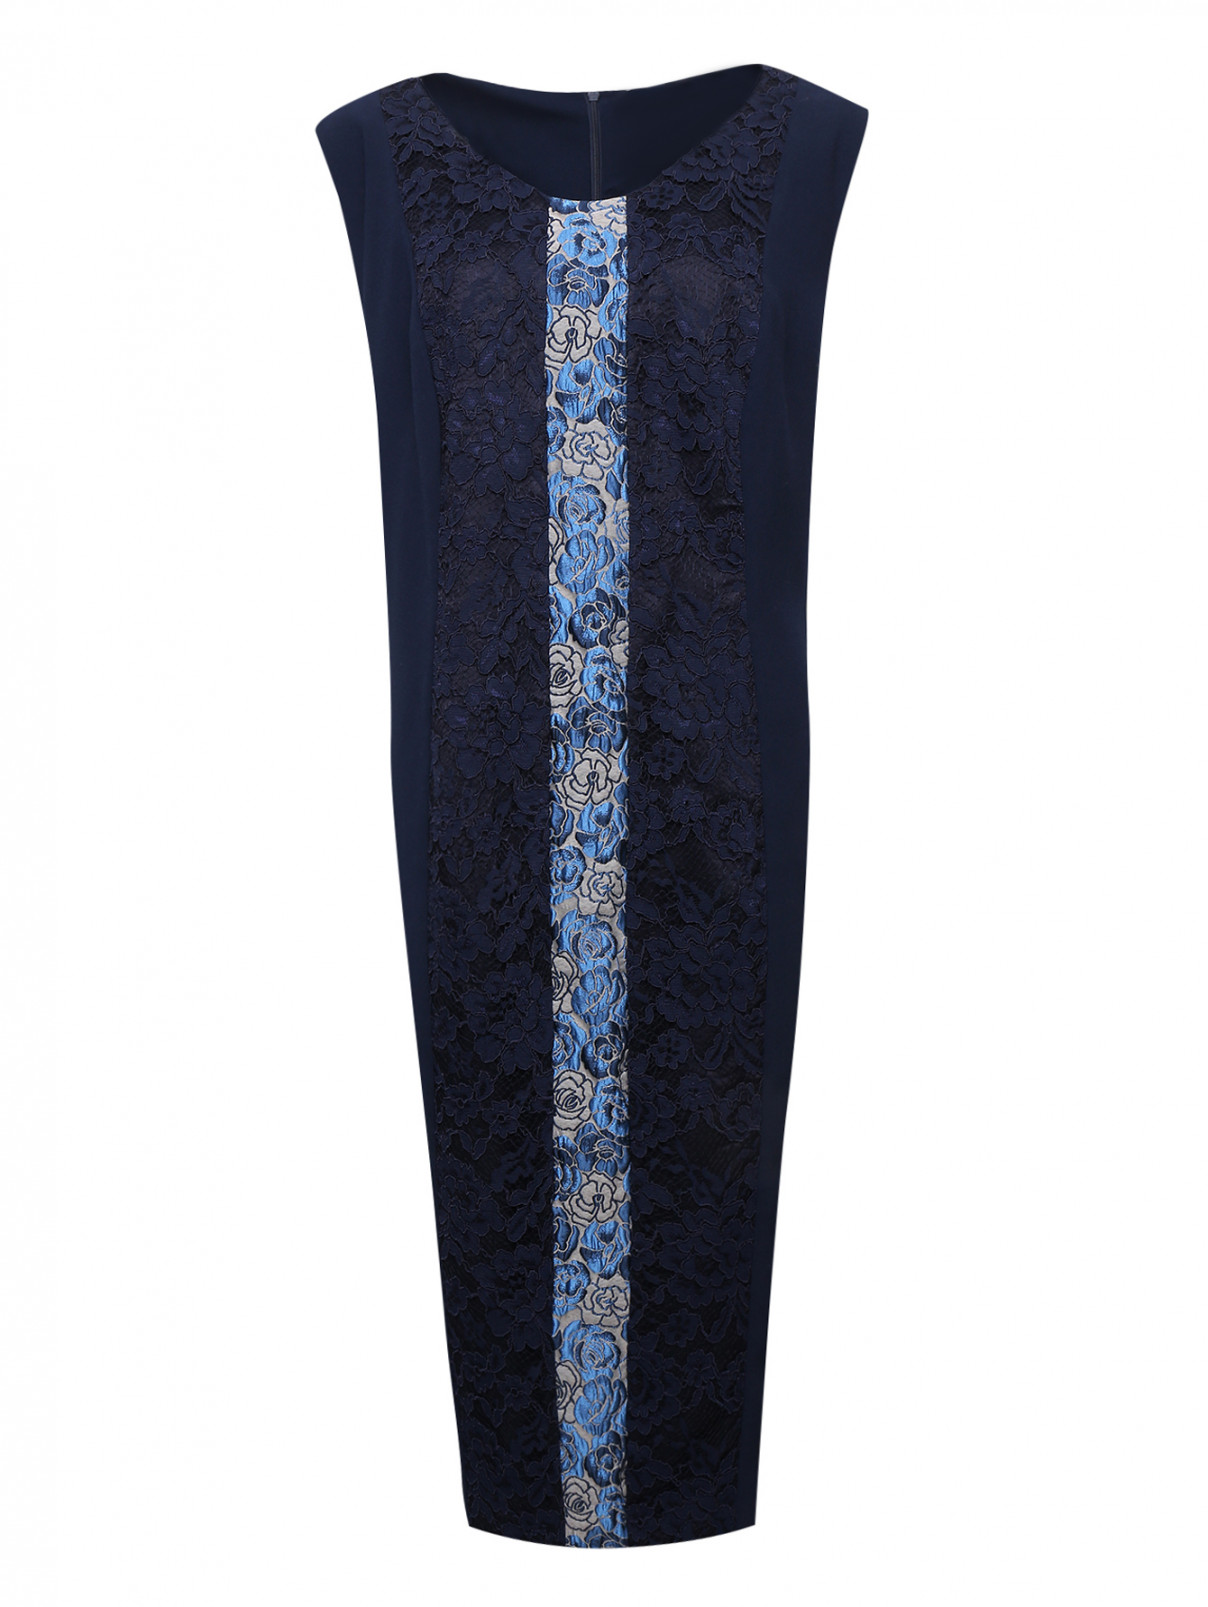 Платье-футляр с кружевной вставкой спереди Marina Rinaldi  –  Общий вид  – Цвет:  Синий